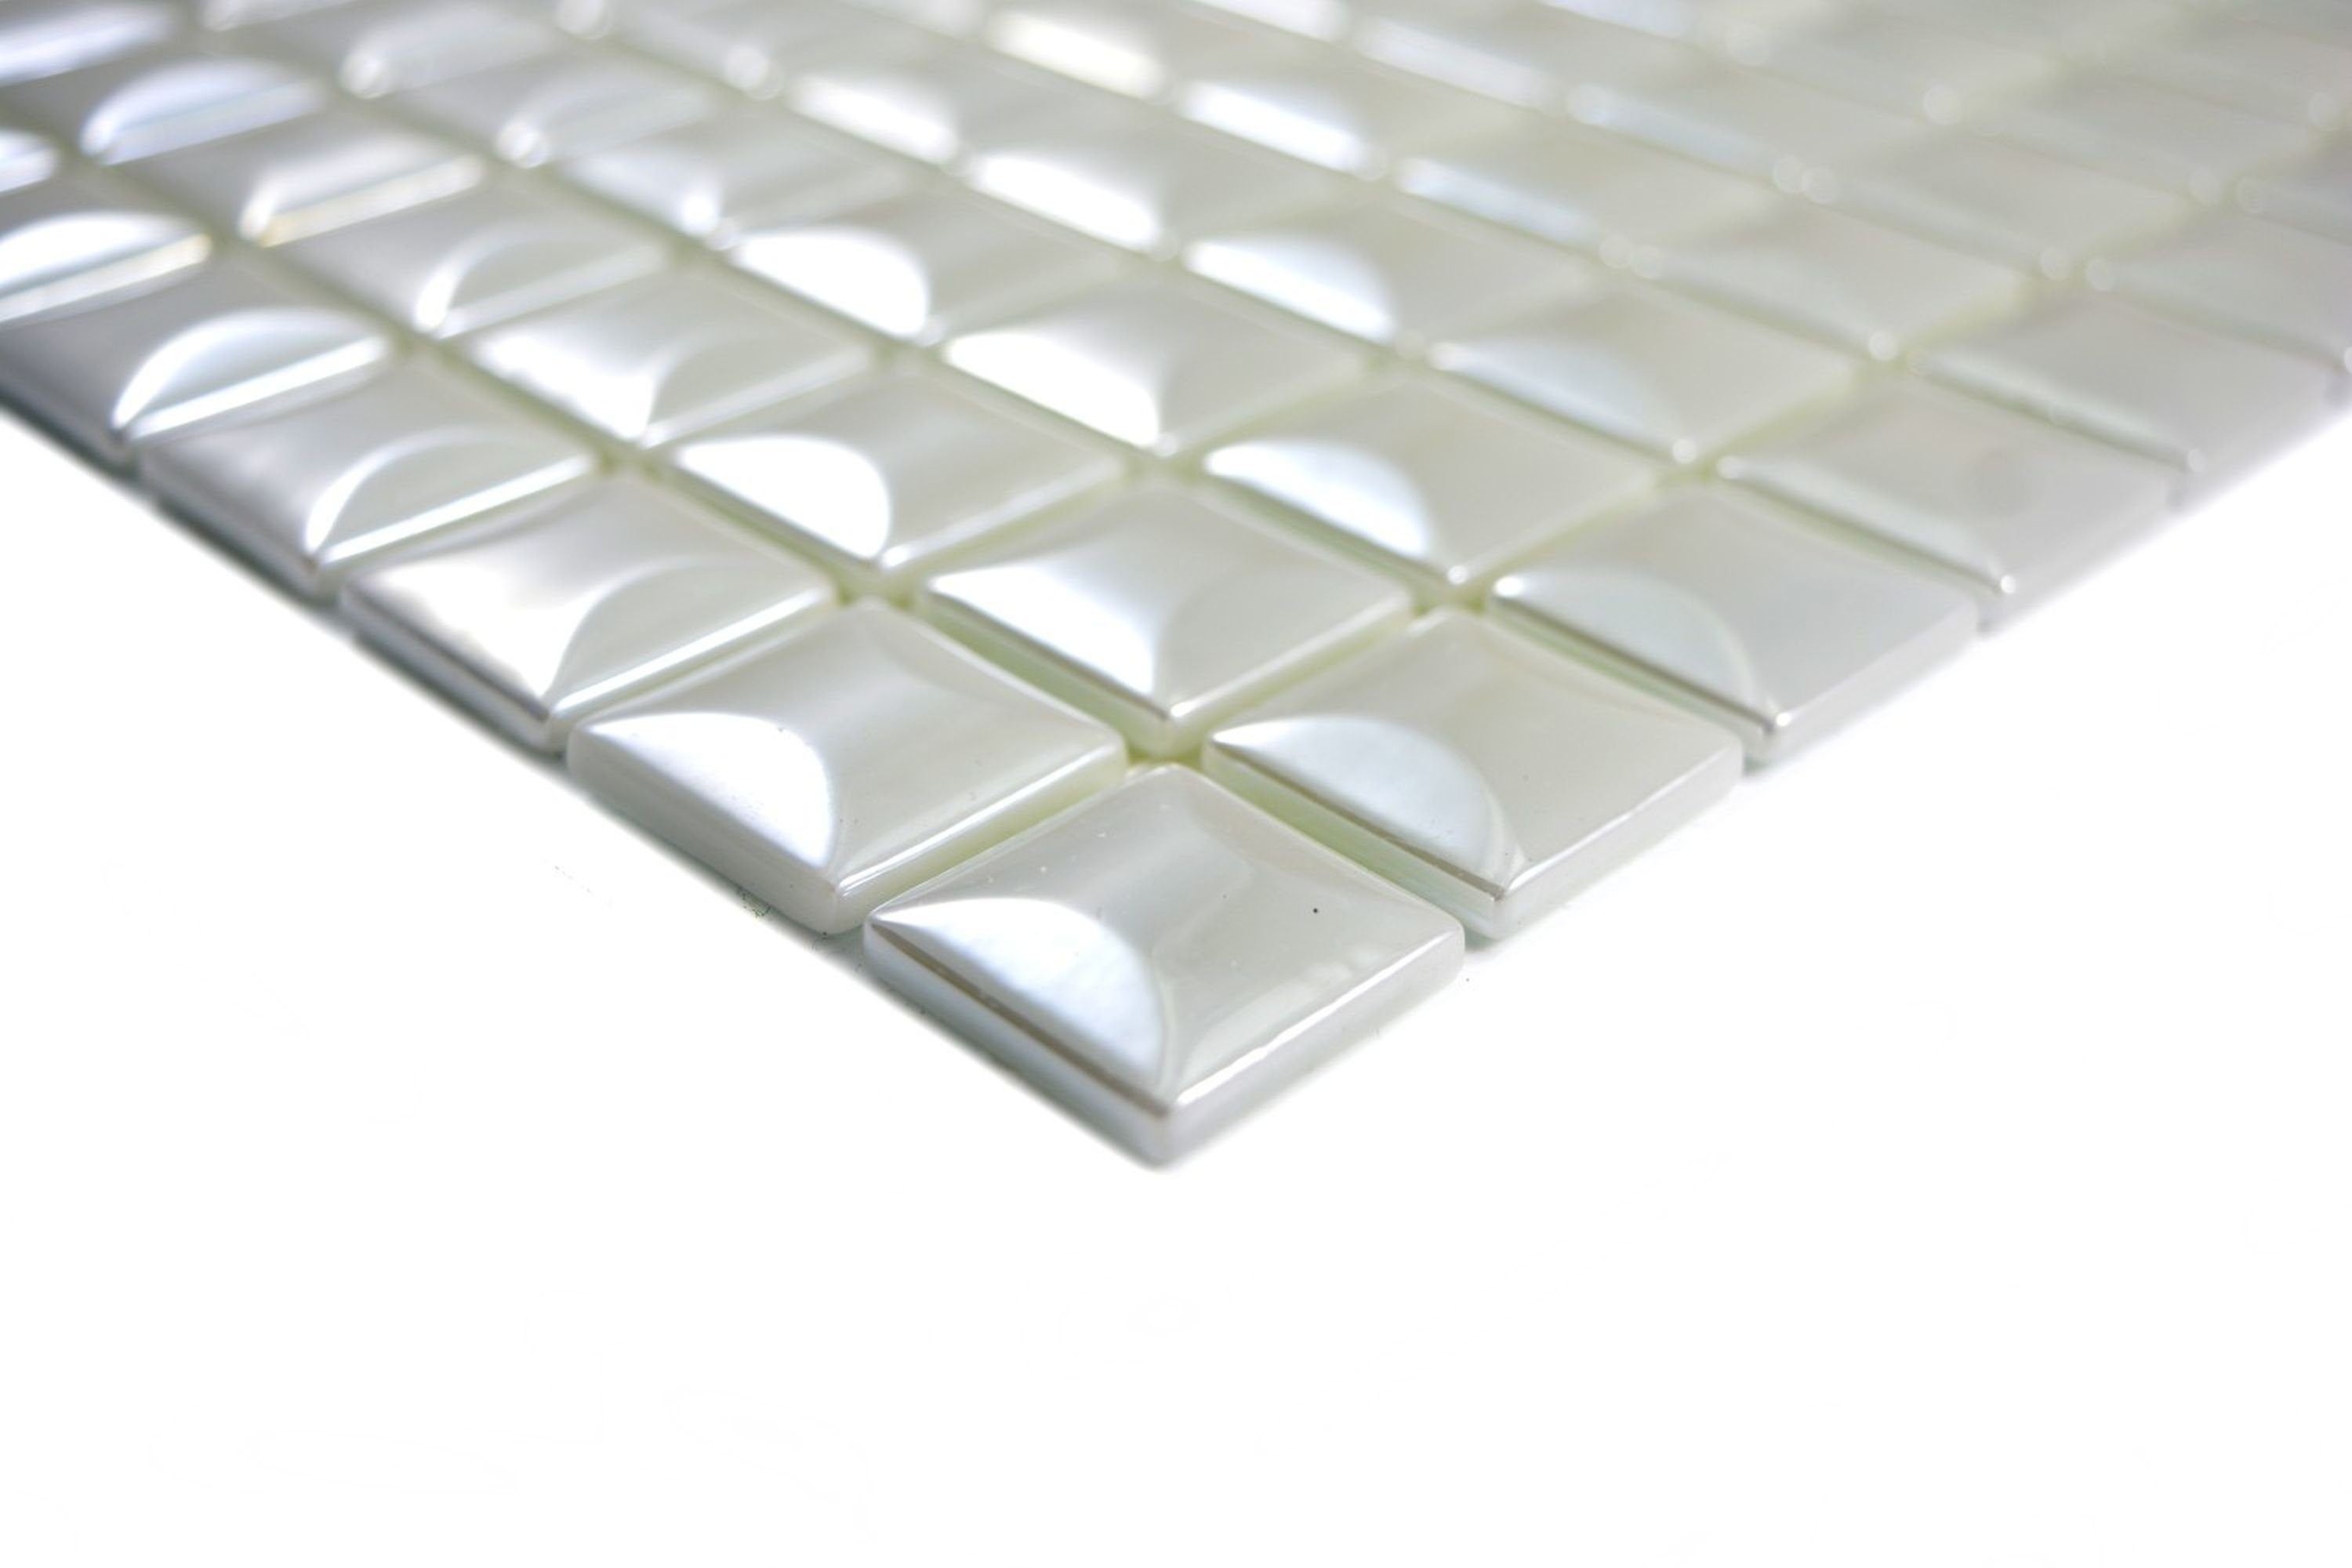 Mosani Mosaikfliesen Glasmosaik Nachhaltiger Wandbelag Fliese Recycling metallic weiss